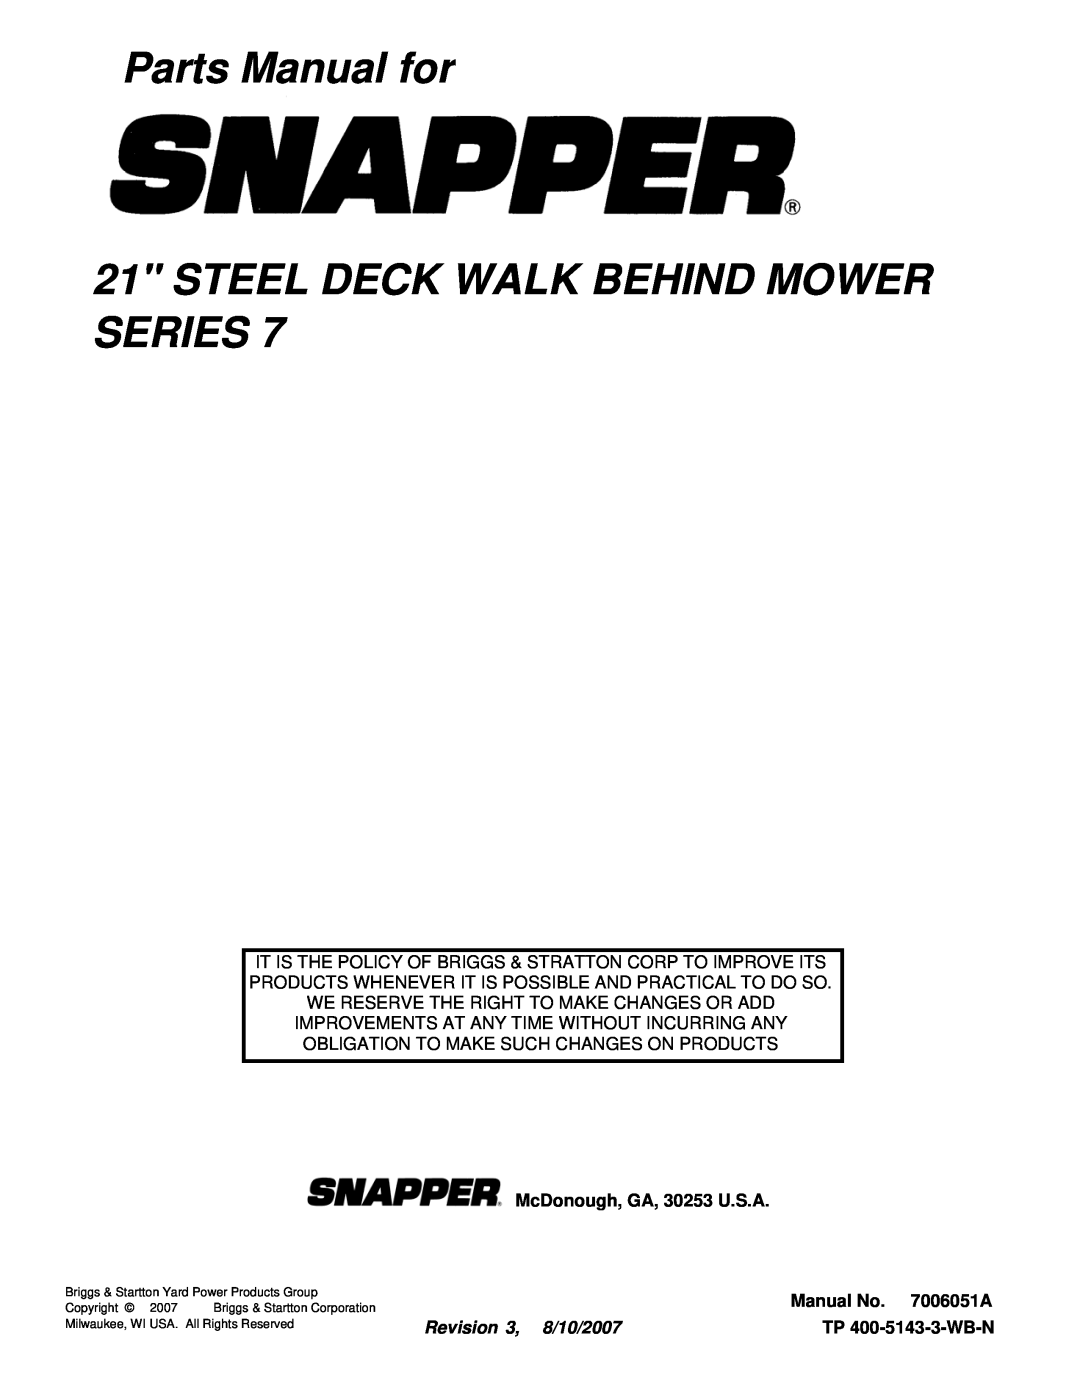 Snapper R21507TV Parts Manual for 21 STEEL DECK WALK BEHIND MOWER SERIES, McDonough, GA, 30253 U.S.A, Manual No. 7006051A 